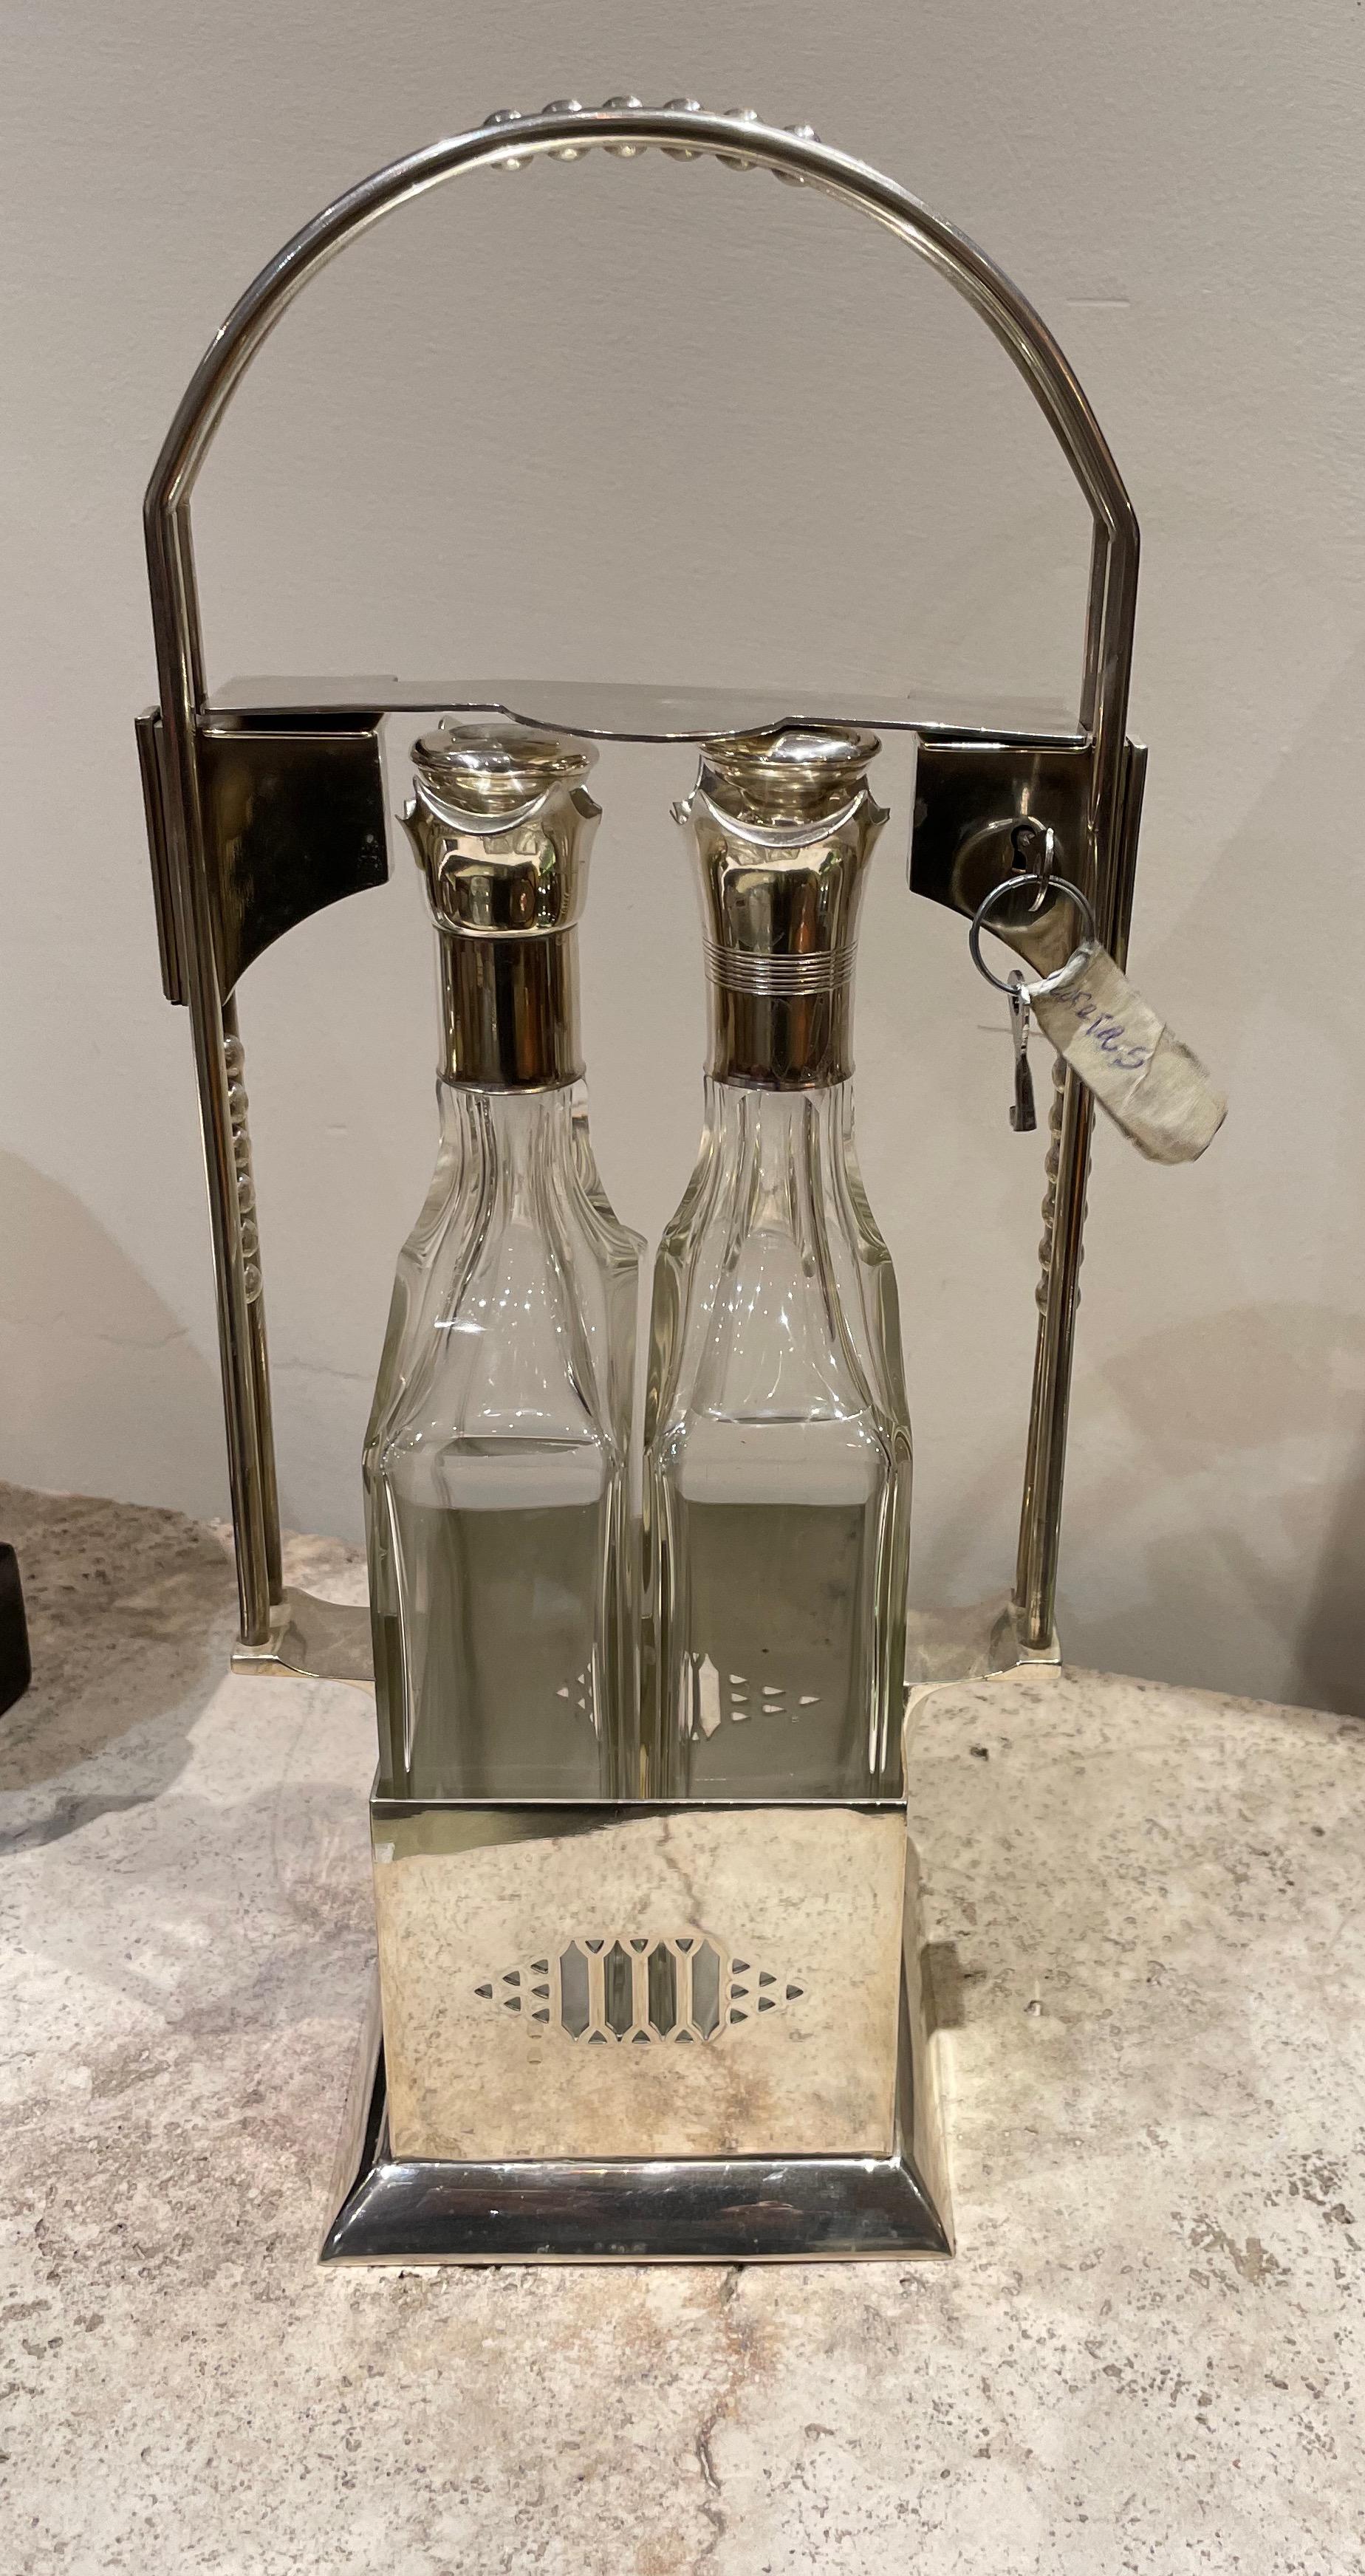 Set à liqueurs vintage Jugendstil Tantalus à deux bouteilles en métal argenté. Cet ensemble élégant a été récemment restauré et se trouve dans un état proche du neuf. La serrure d'origine fonctionne et maintient les deux bouteilles vers le bas pour